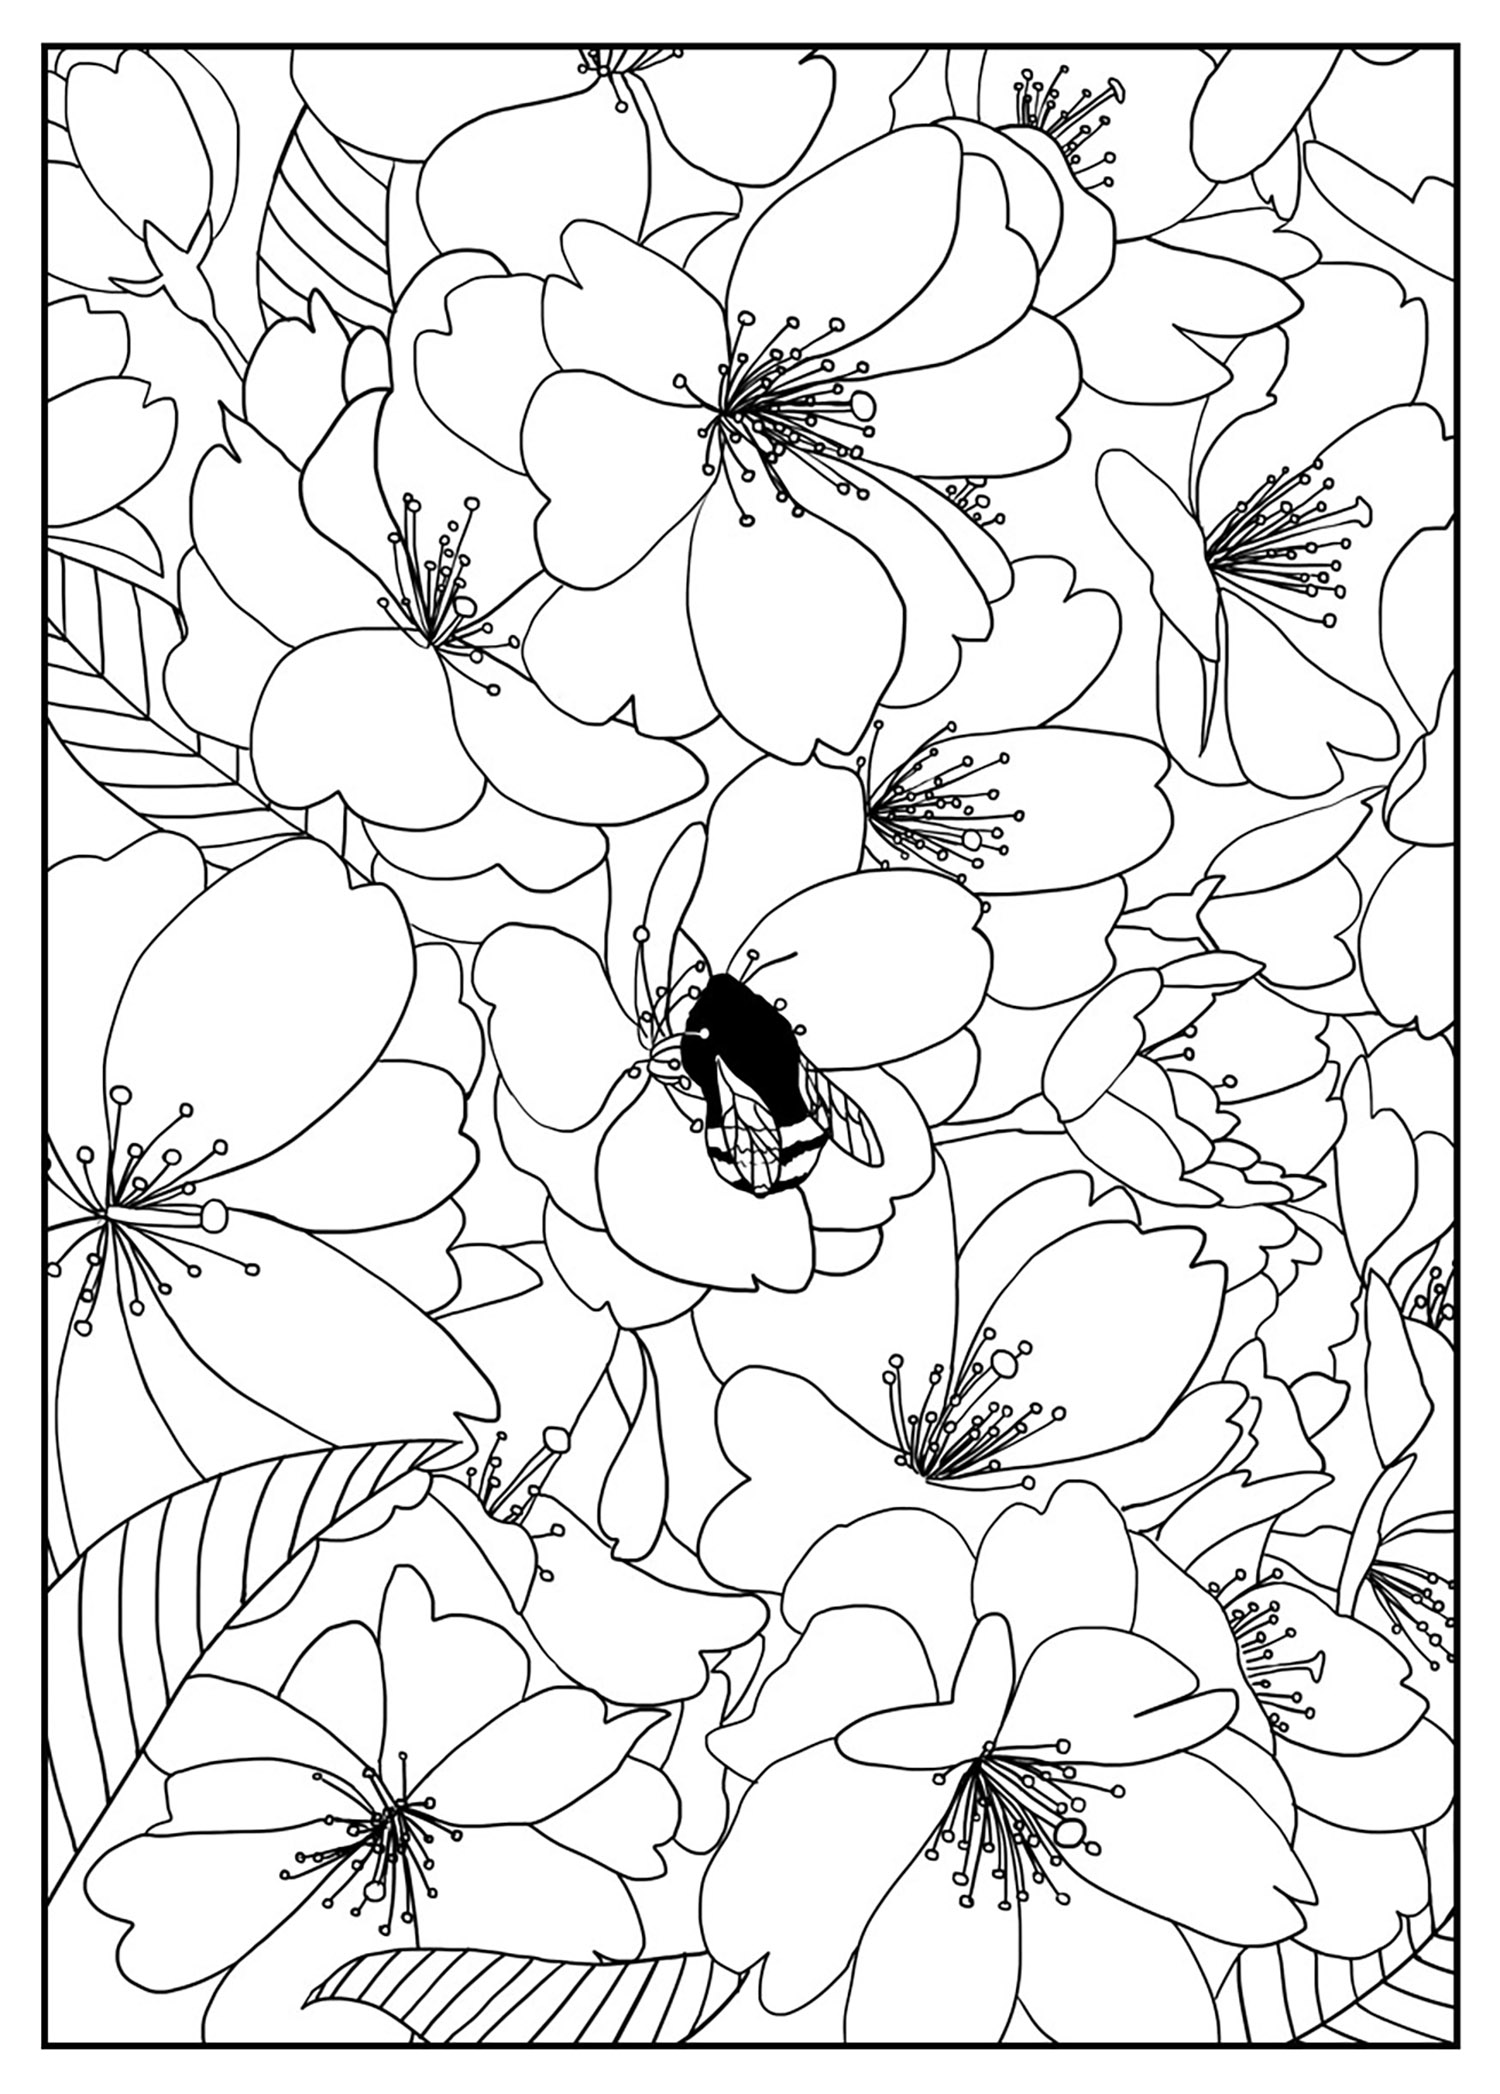 Hübsche Kirschblüten. Färbe diese wunderschönen Kirschblüten aus, wobei die mittlere Blüte von einer hübschen Biene gepflückt wird. Es bleibt dir überlassen, ob du alle Blumen in der gleichen Farbe, in ganz unterschiedlichen Farben oder mit Schattierungen einer einzigen Farbe ausmalst.., Künstler : Mizu